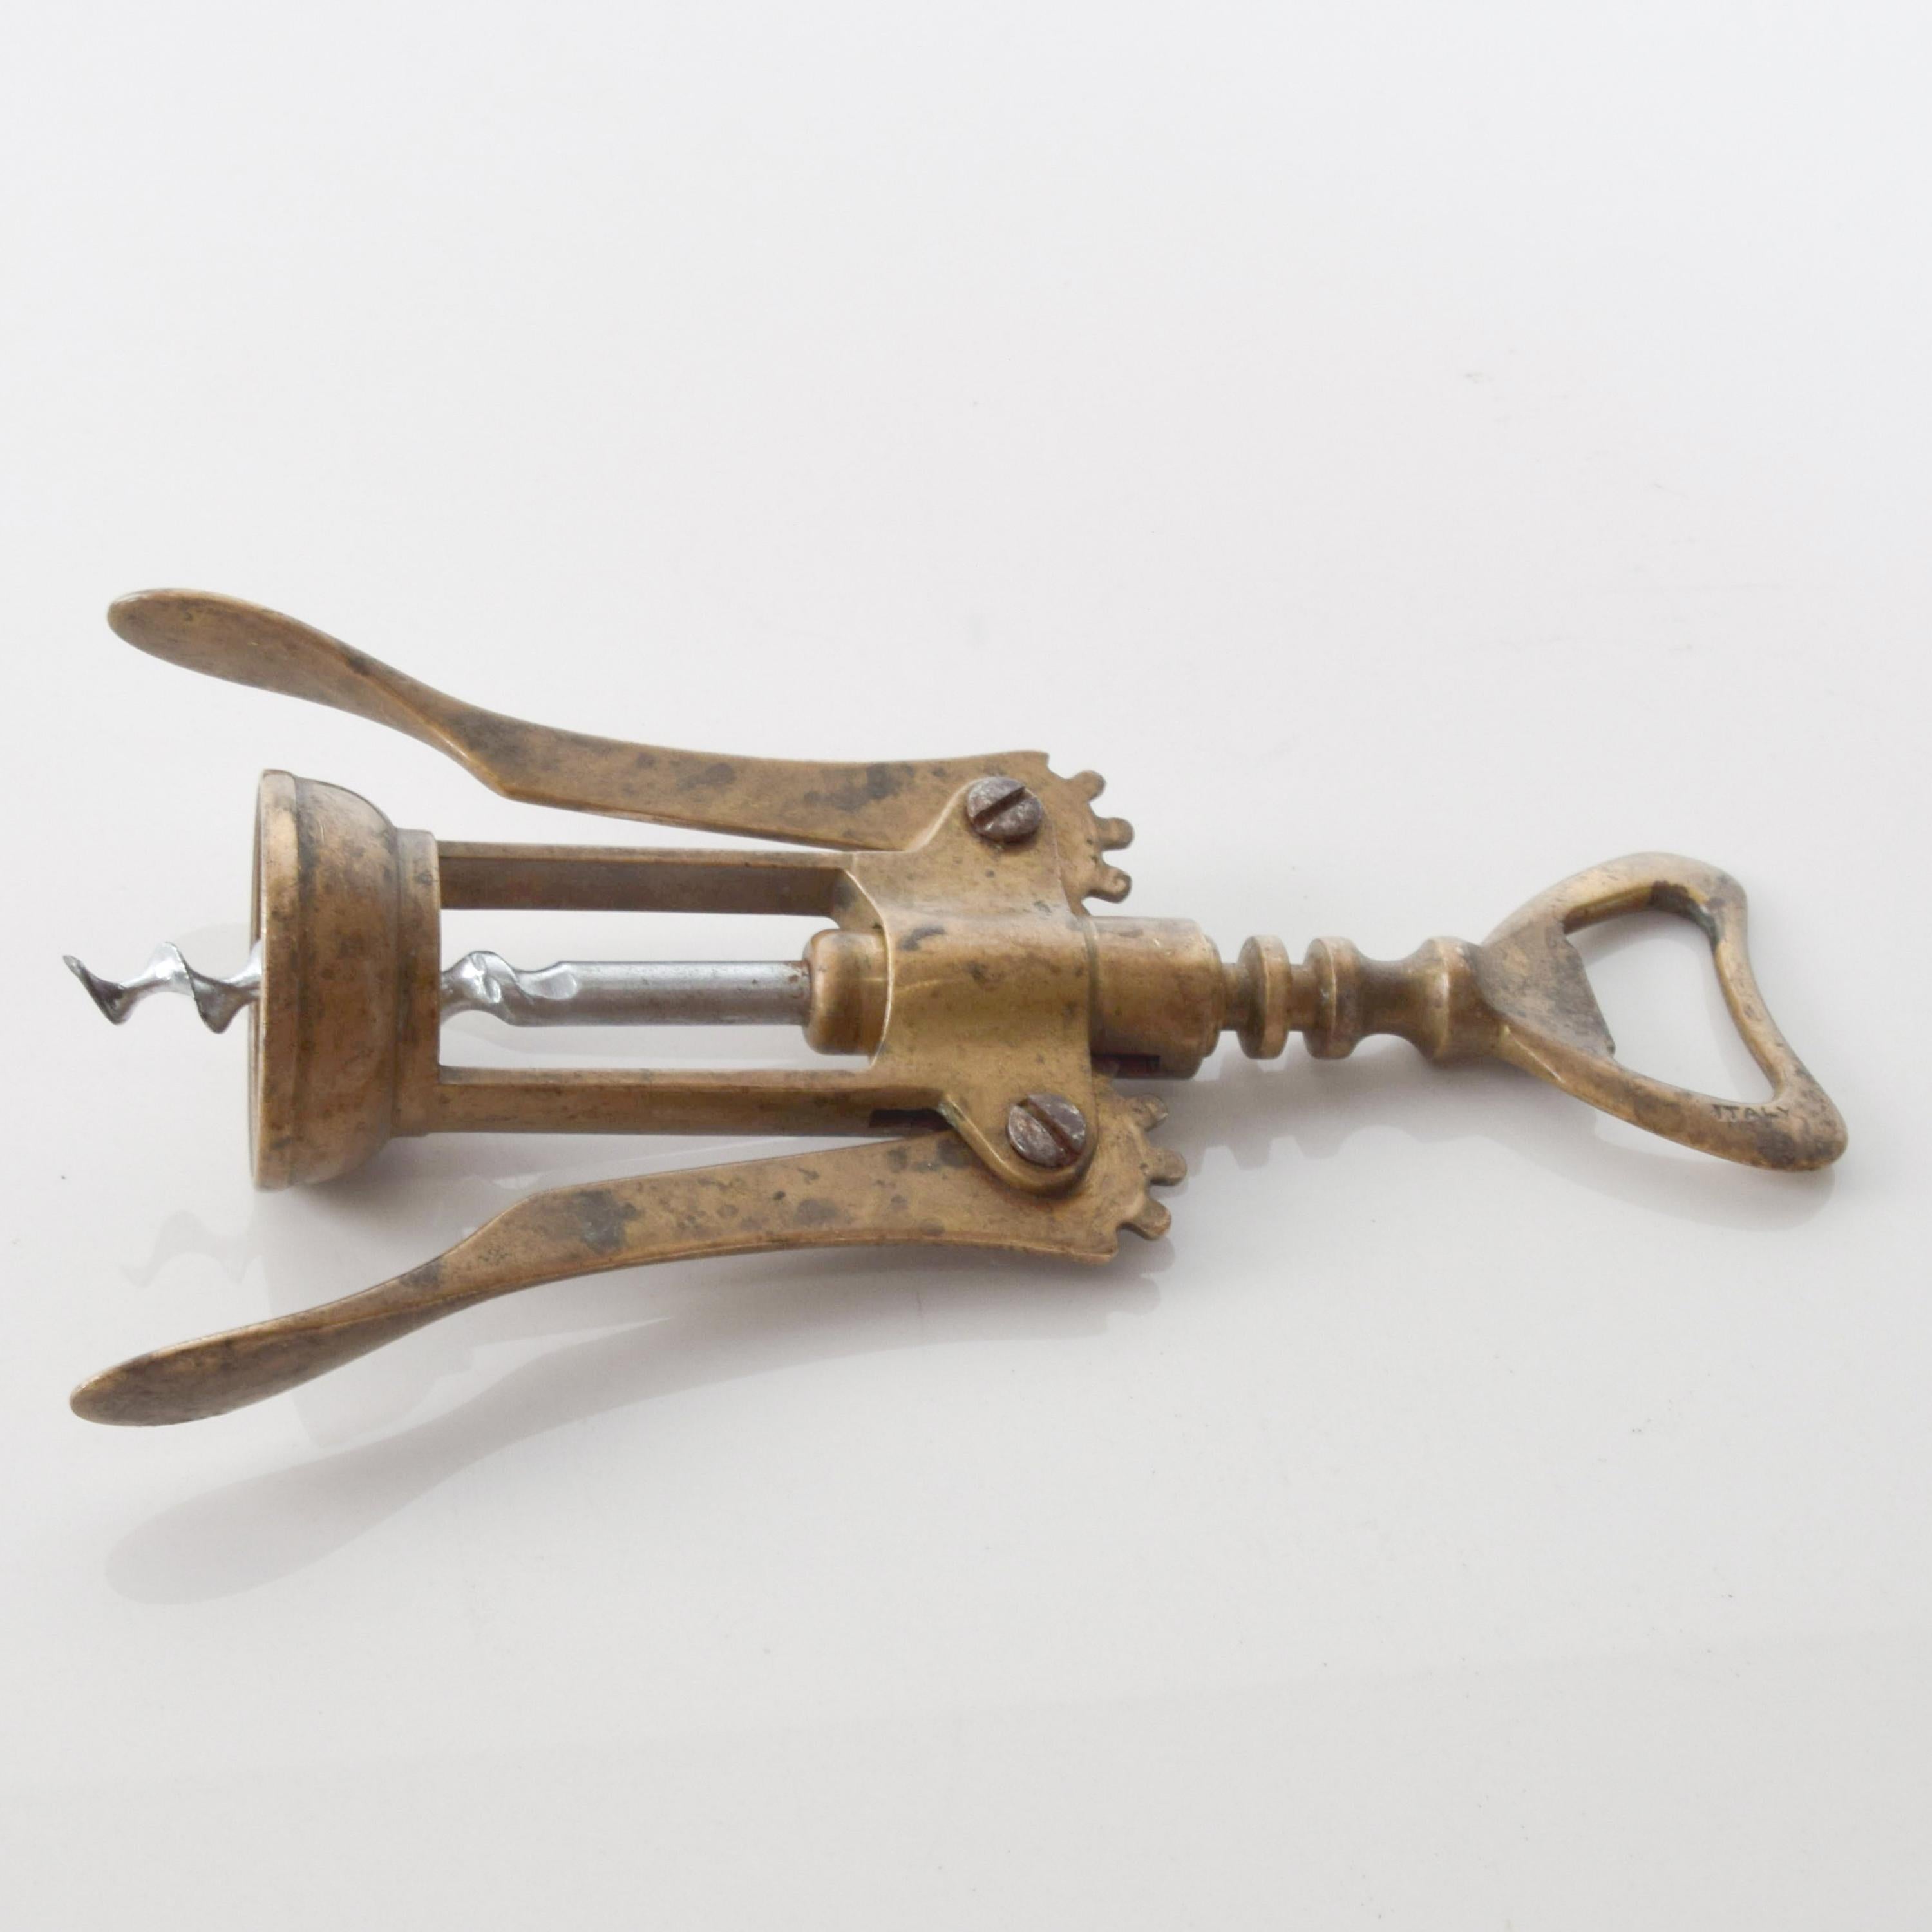 vintage brass corkscrew